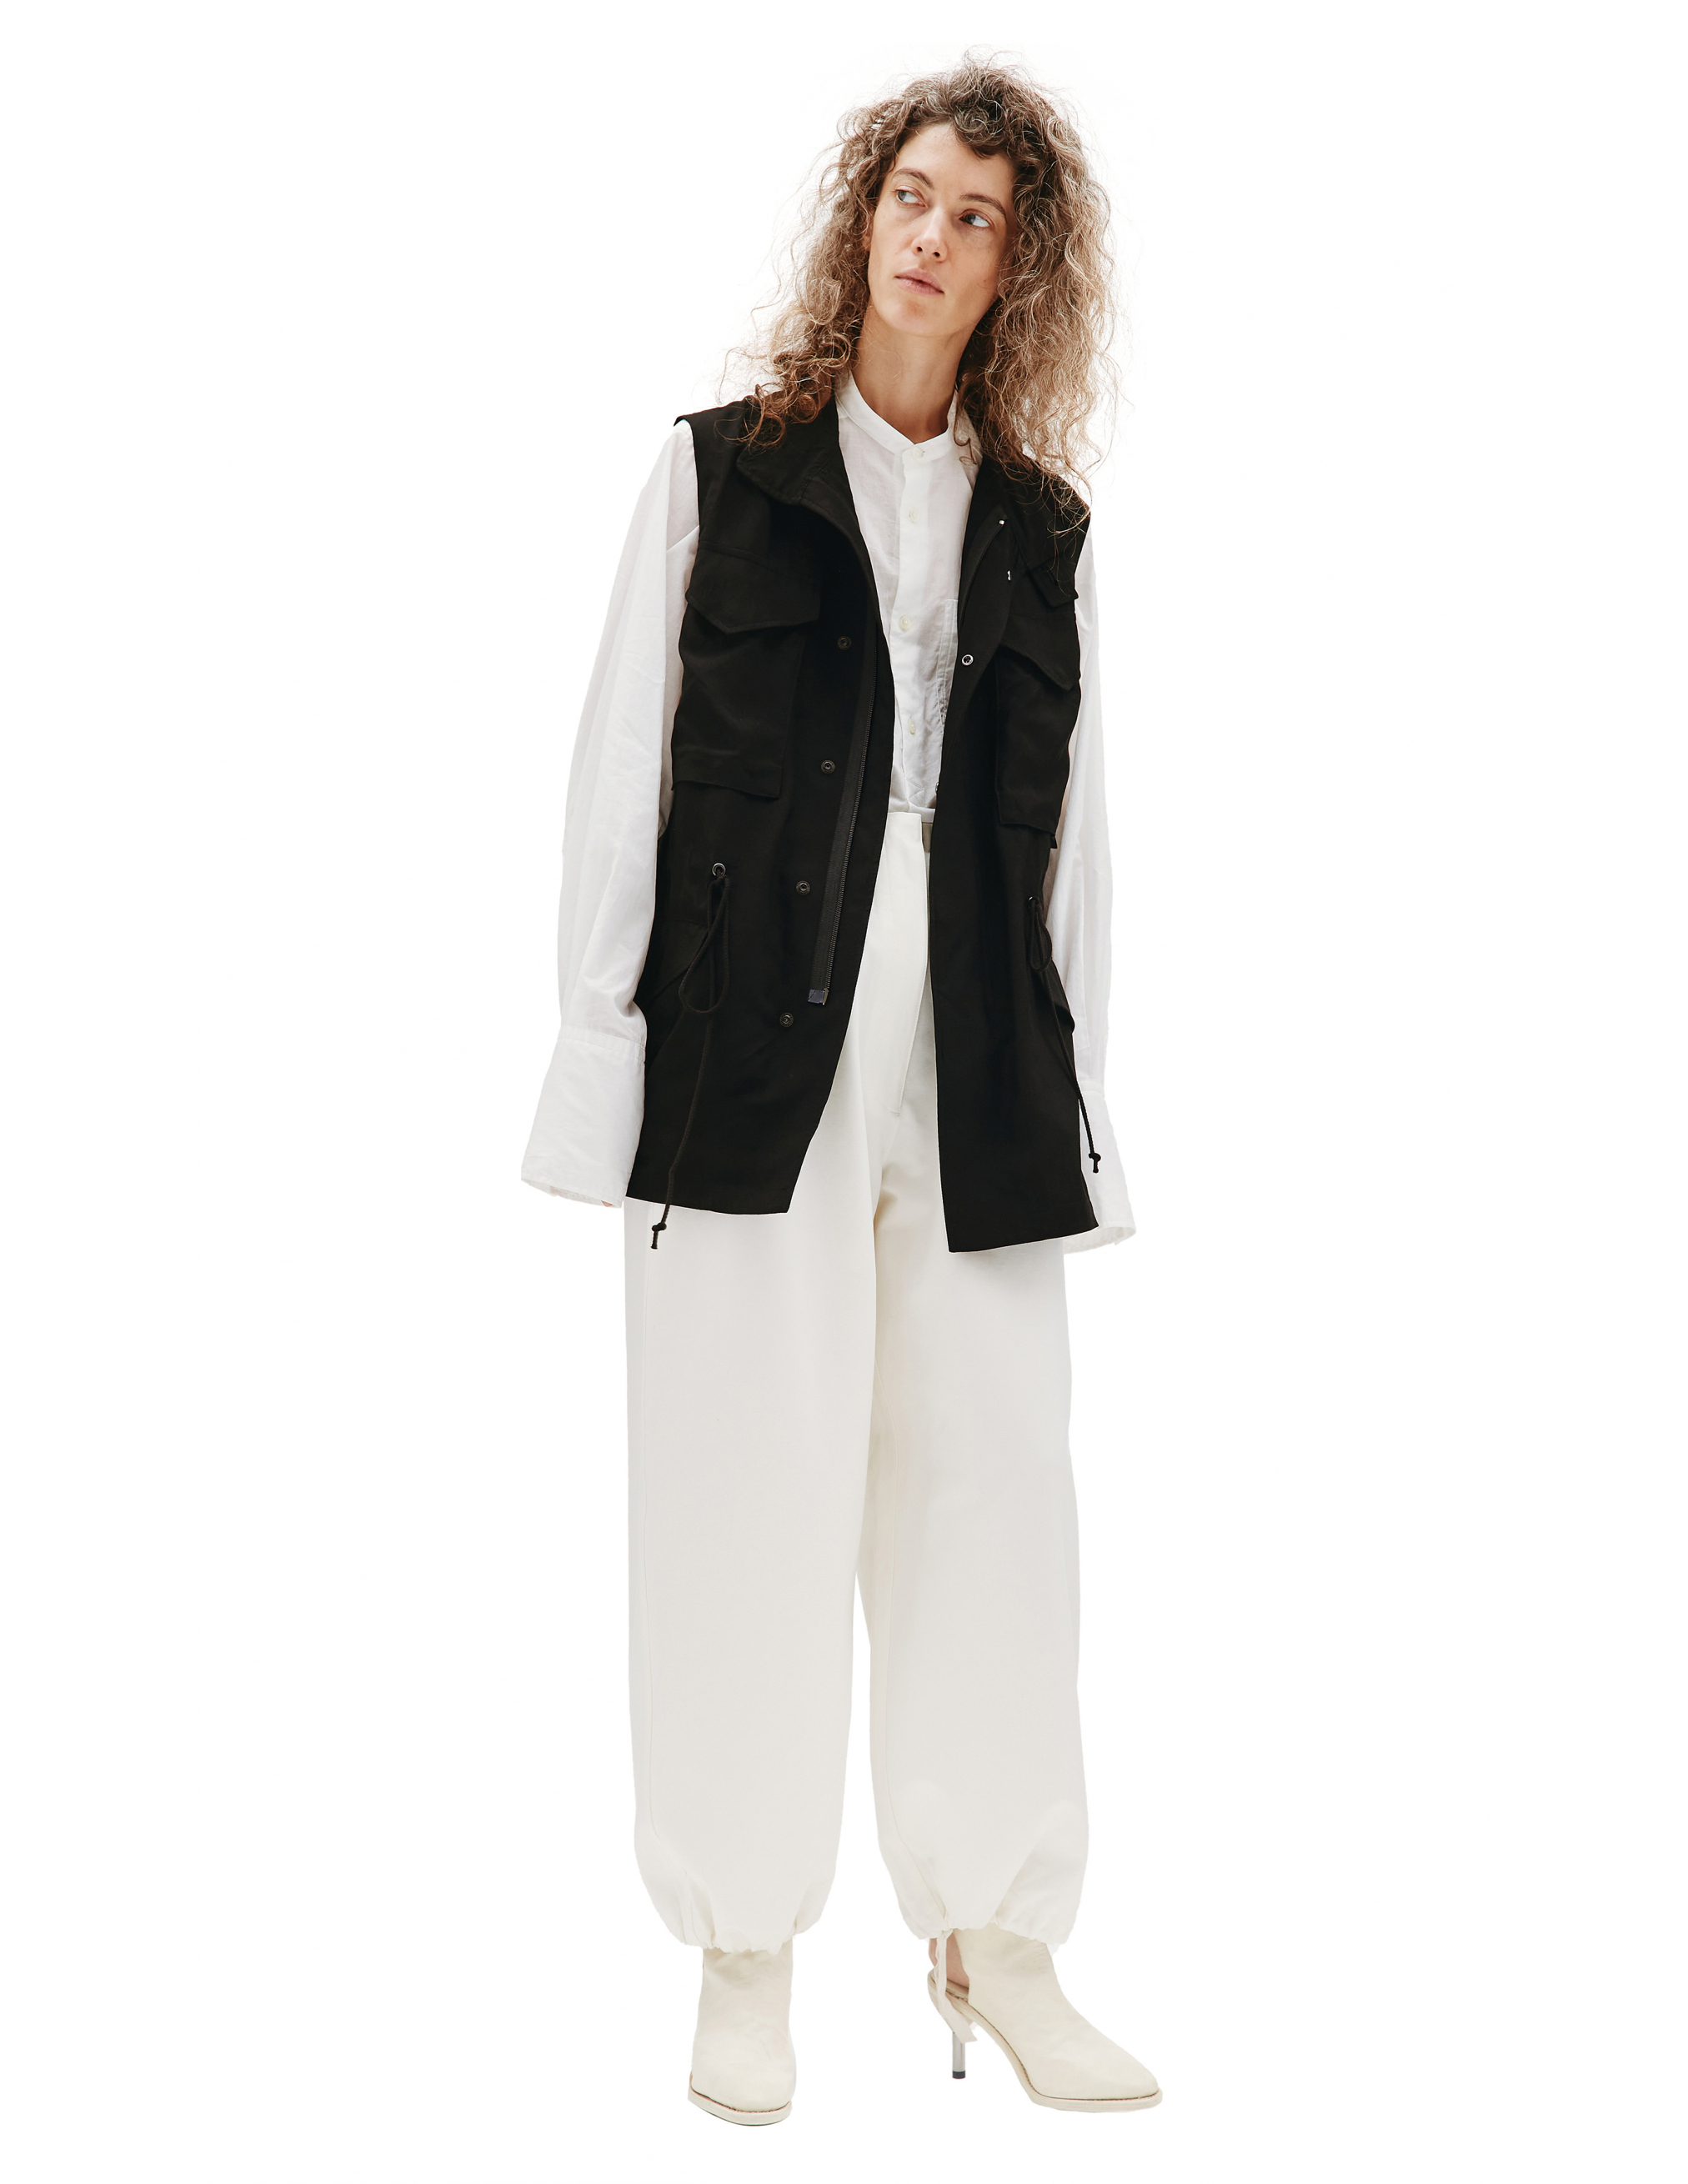 Black rayon vest Ys YD-V02-201-1, размер 2 - фото 4